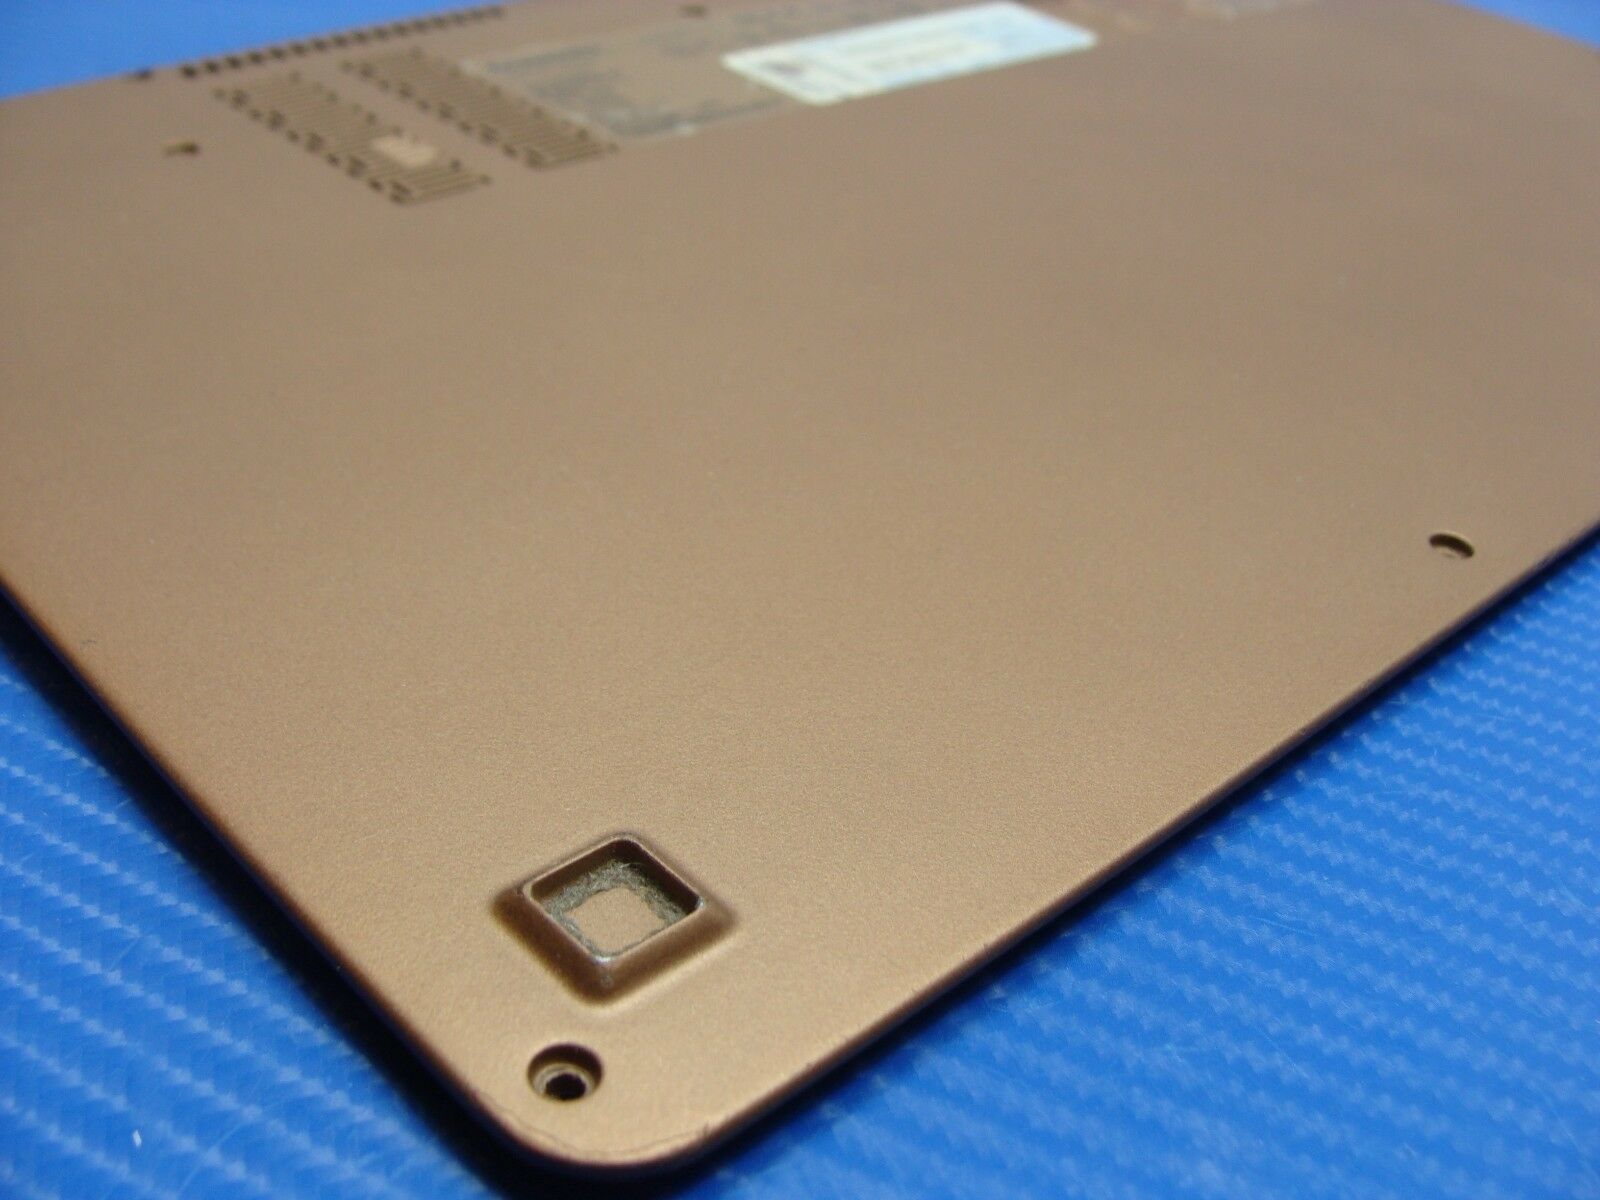 Lenovo IdeaPad U260 12.5